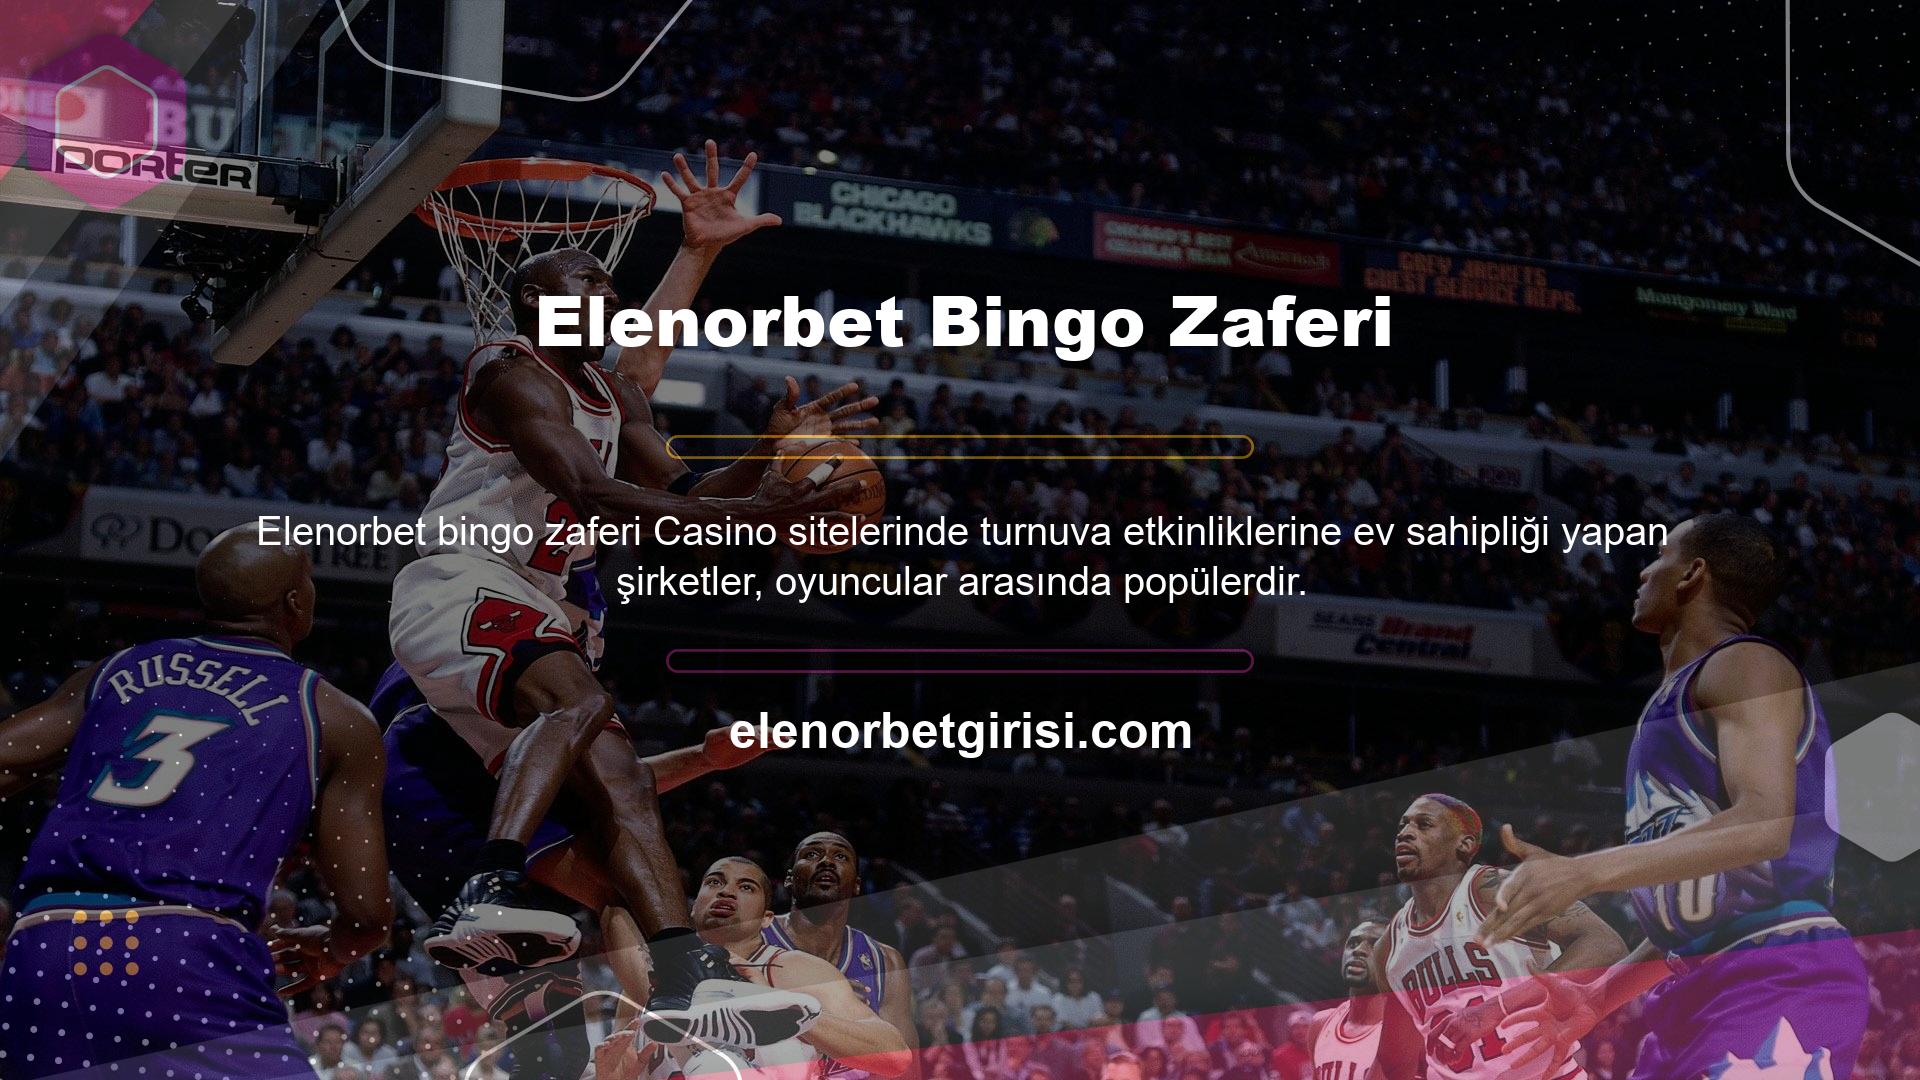 Elenorbet, bingo alanında turnuvalara ev sahipliği yapmasıyla da tanınan bir casino sitesidir